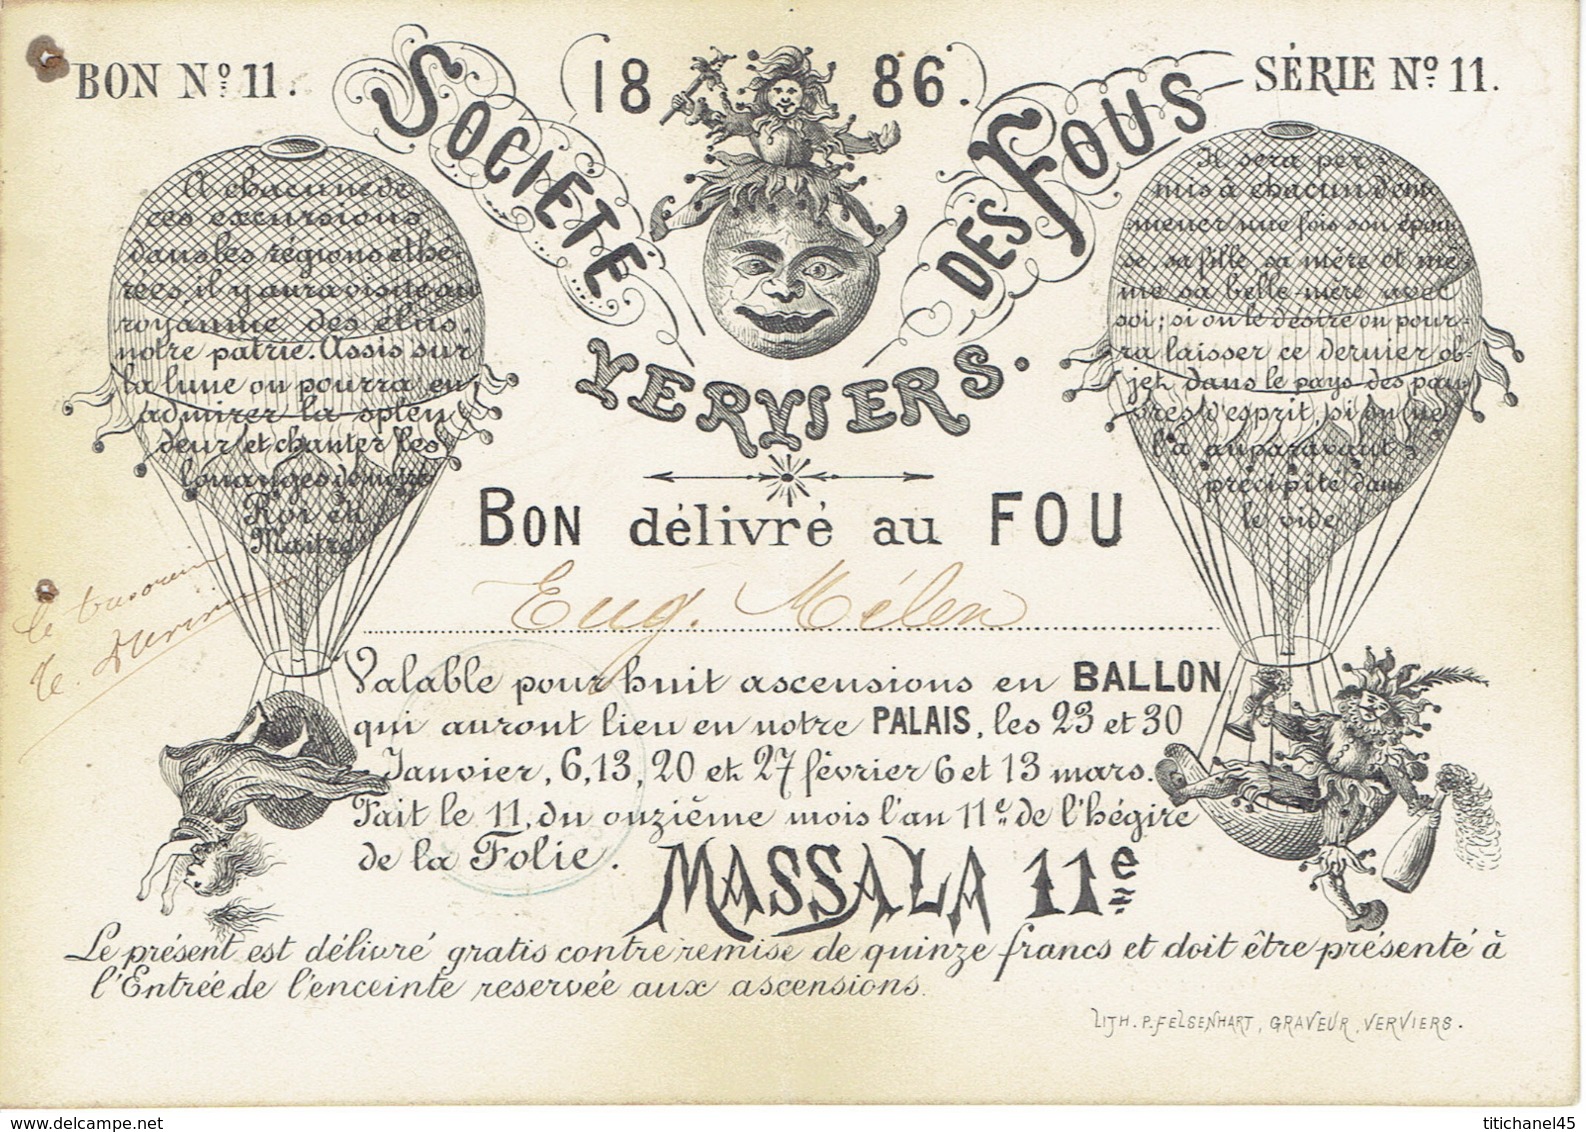 1866 VERVIERS - Rare & Superbe Document De La SOCIETE DES FOUS : Bon Pour Huit Ascencions En BALLON (MONTGOLFIERE) - Documents Historiques